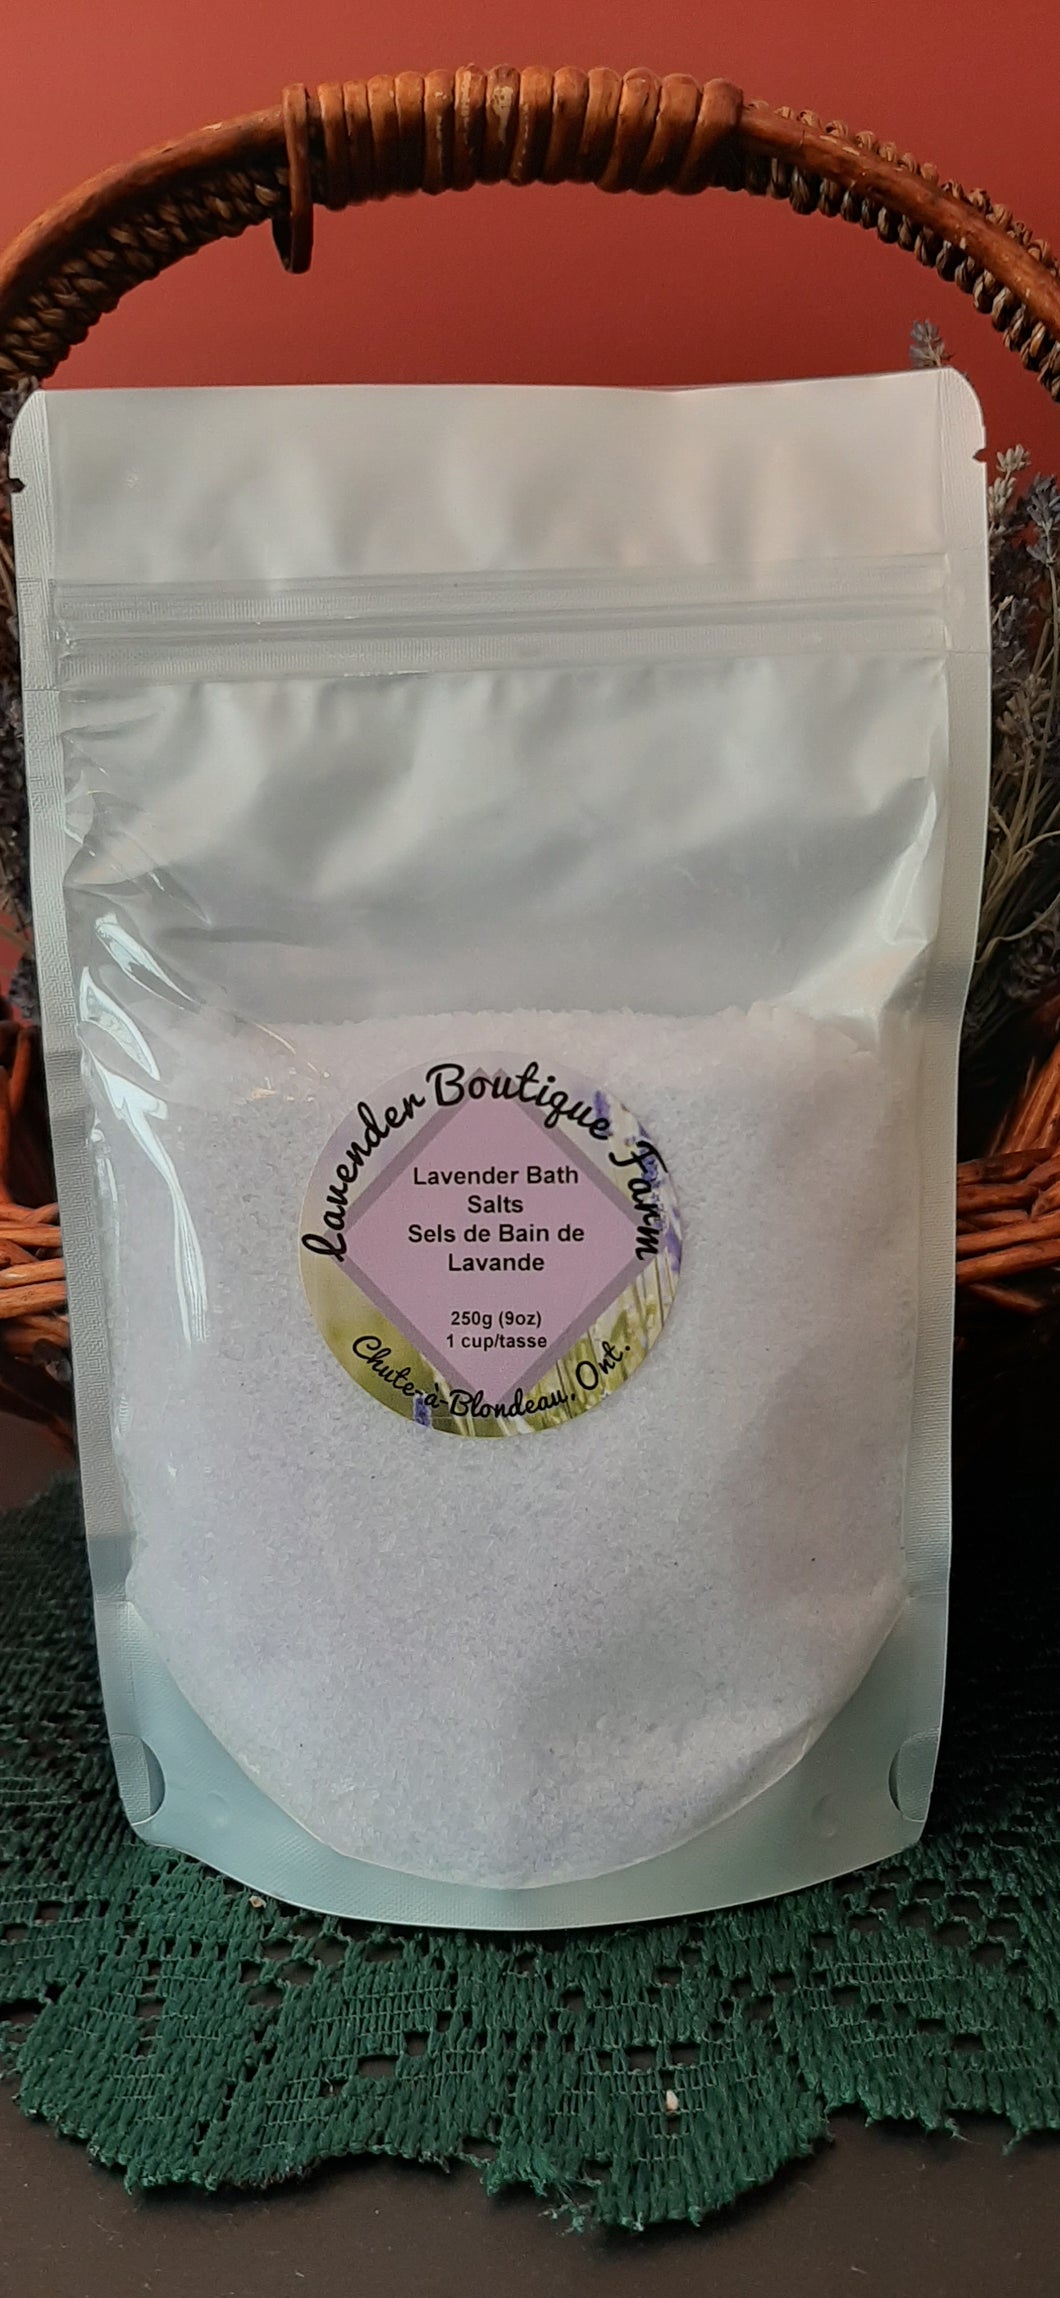 Lavender bath salt pouch